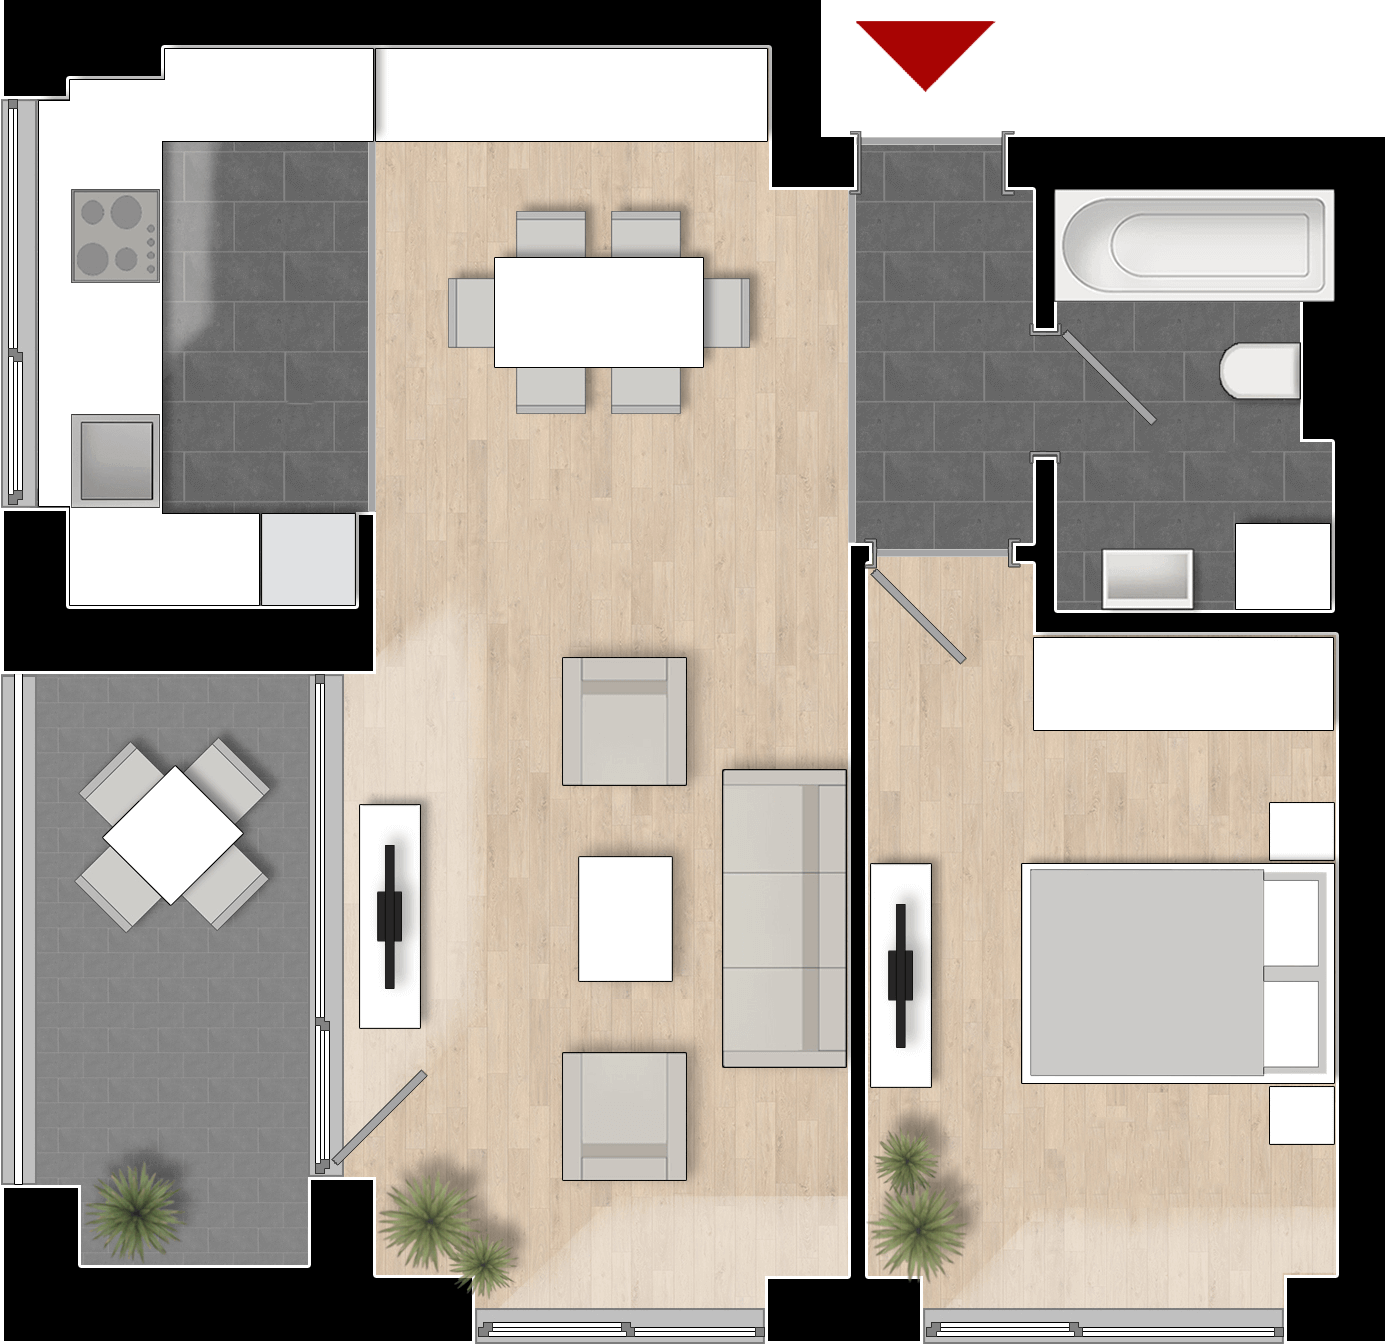  Apartament 603, Tip de apartament 2B cu 2 camere 